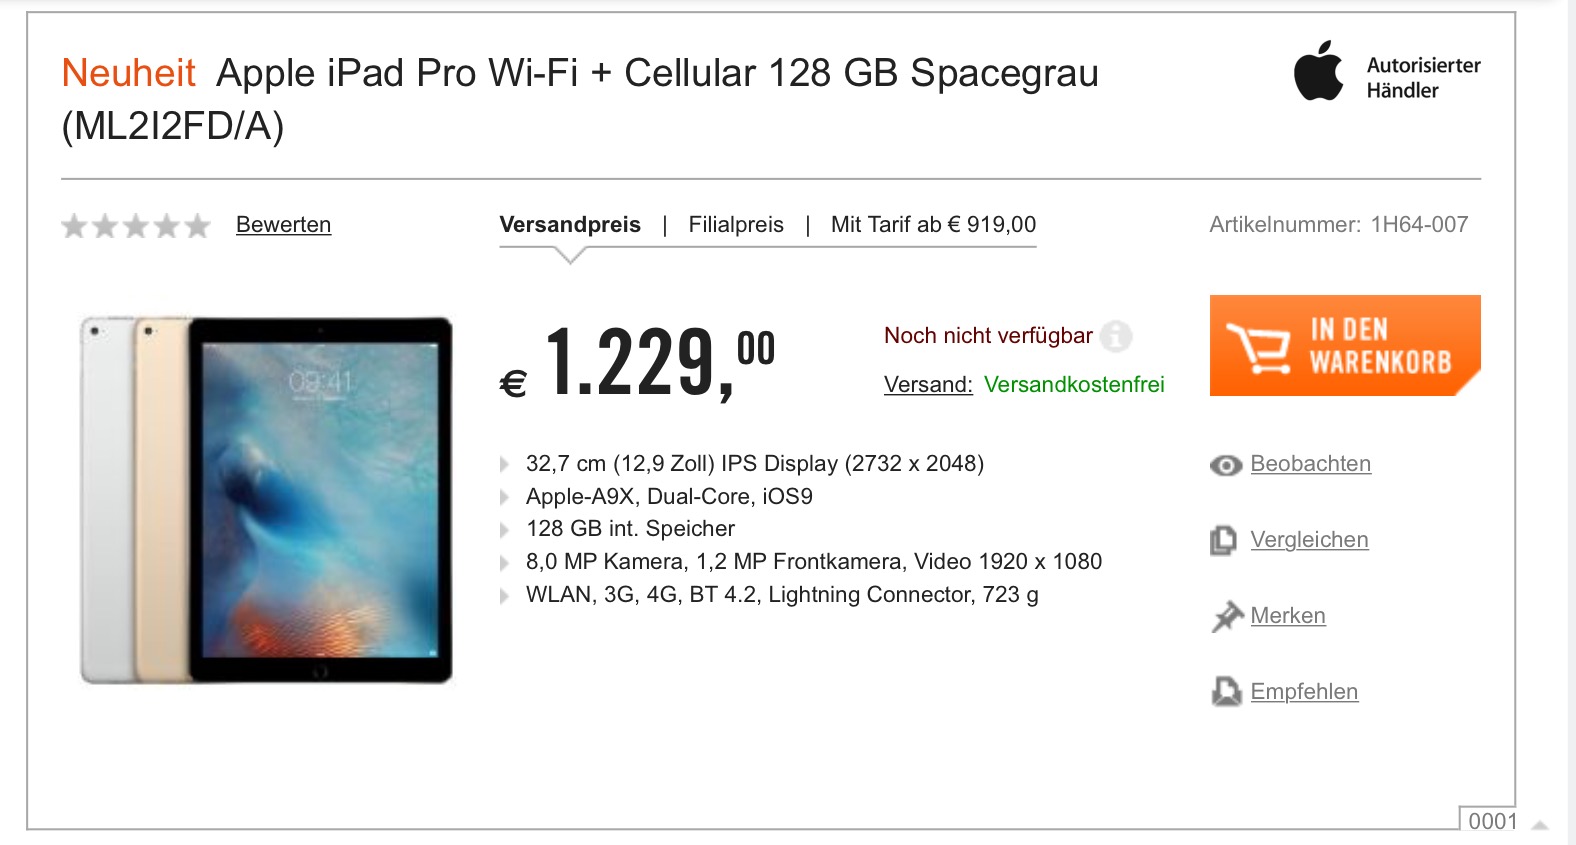 iPad Pro price